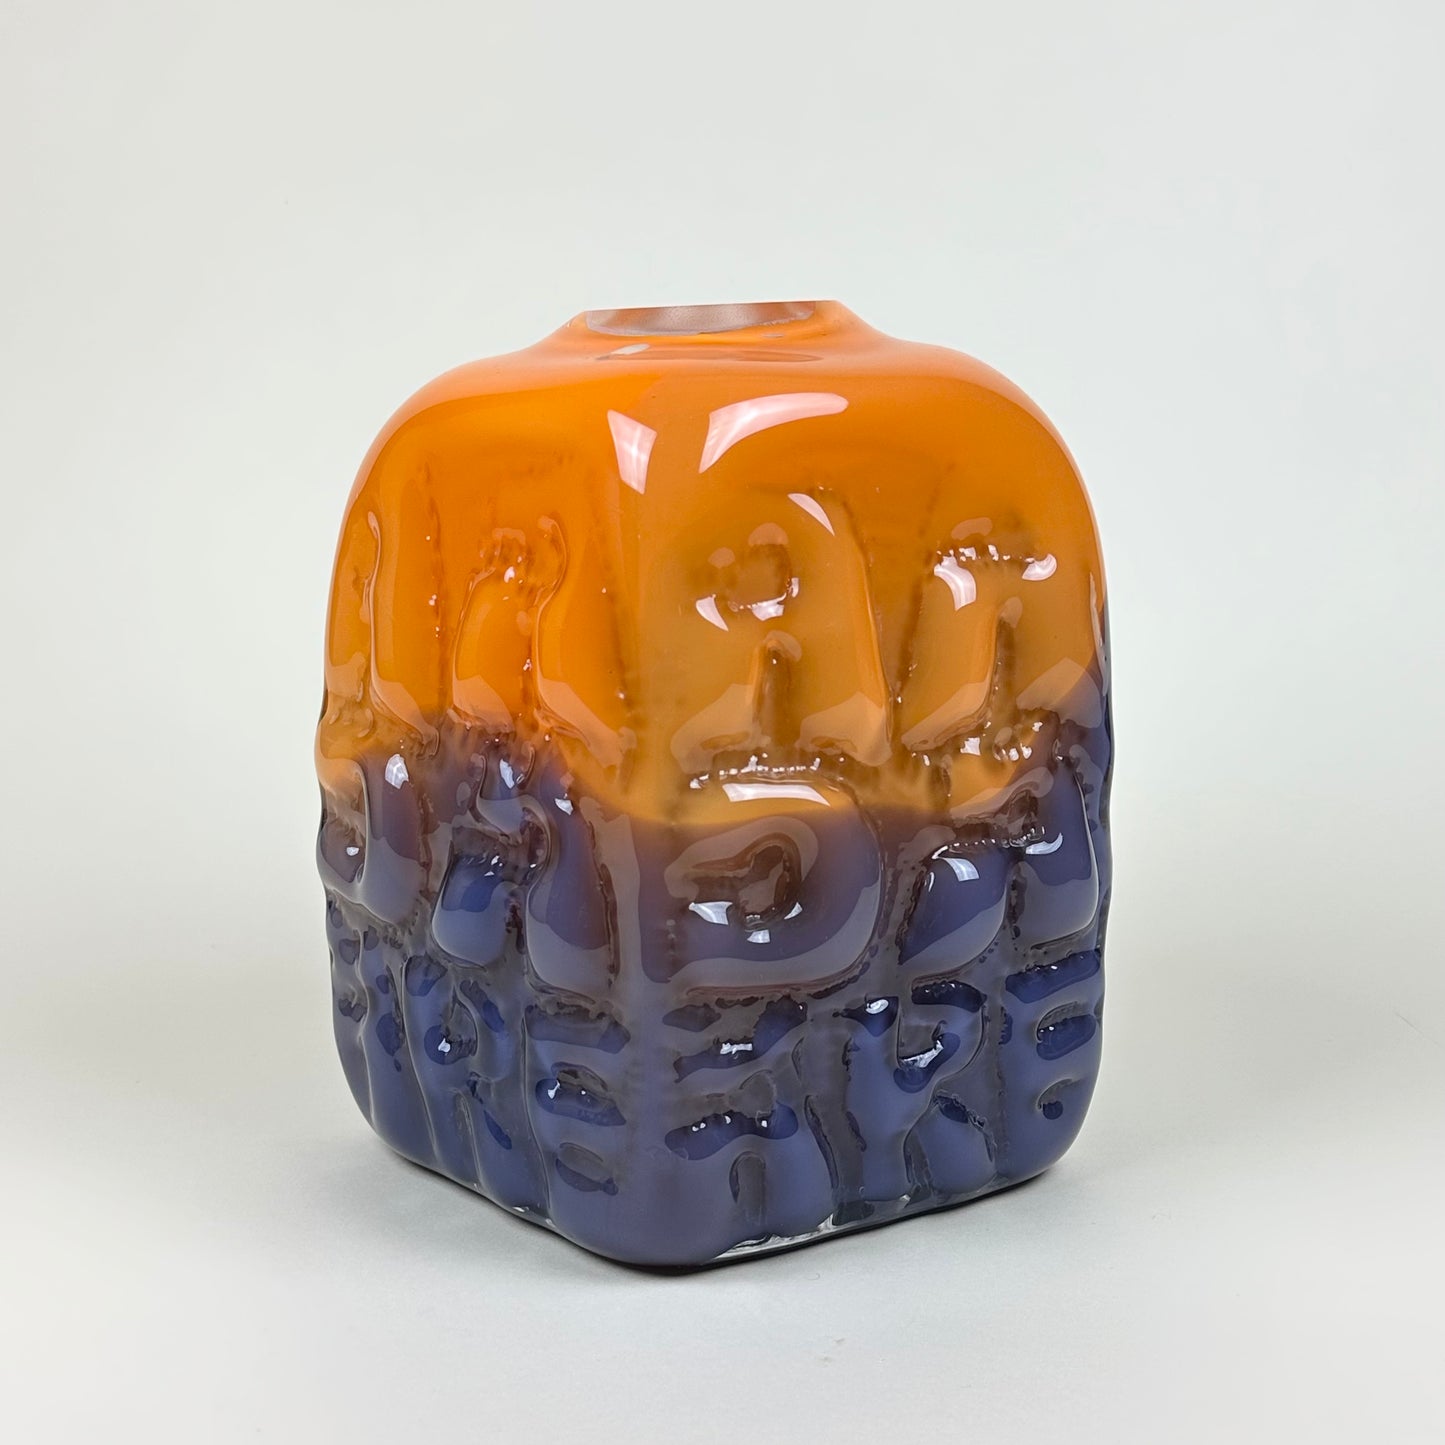 Orange/purple "AADÄÄRE" vase by Studio Reiser